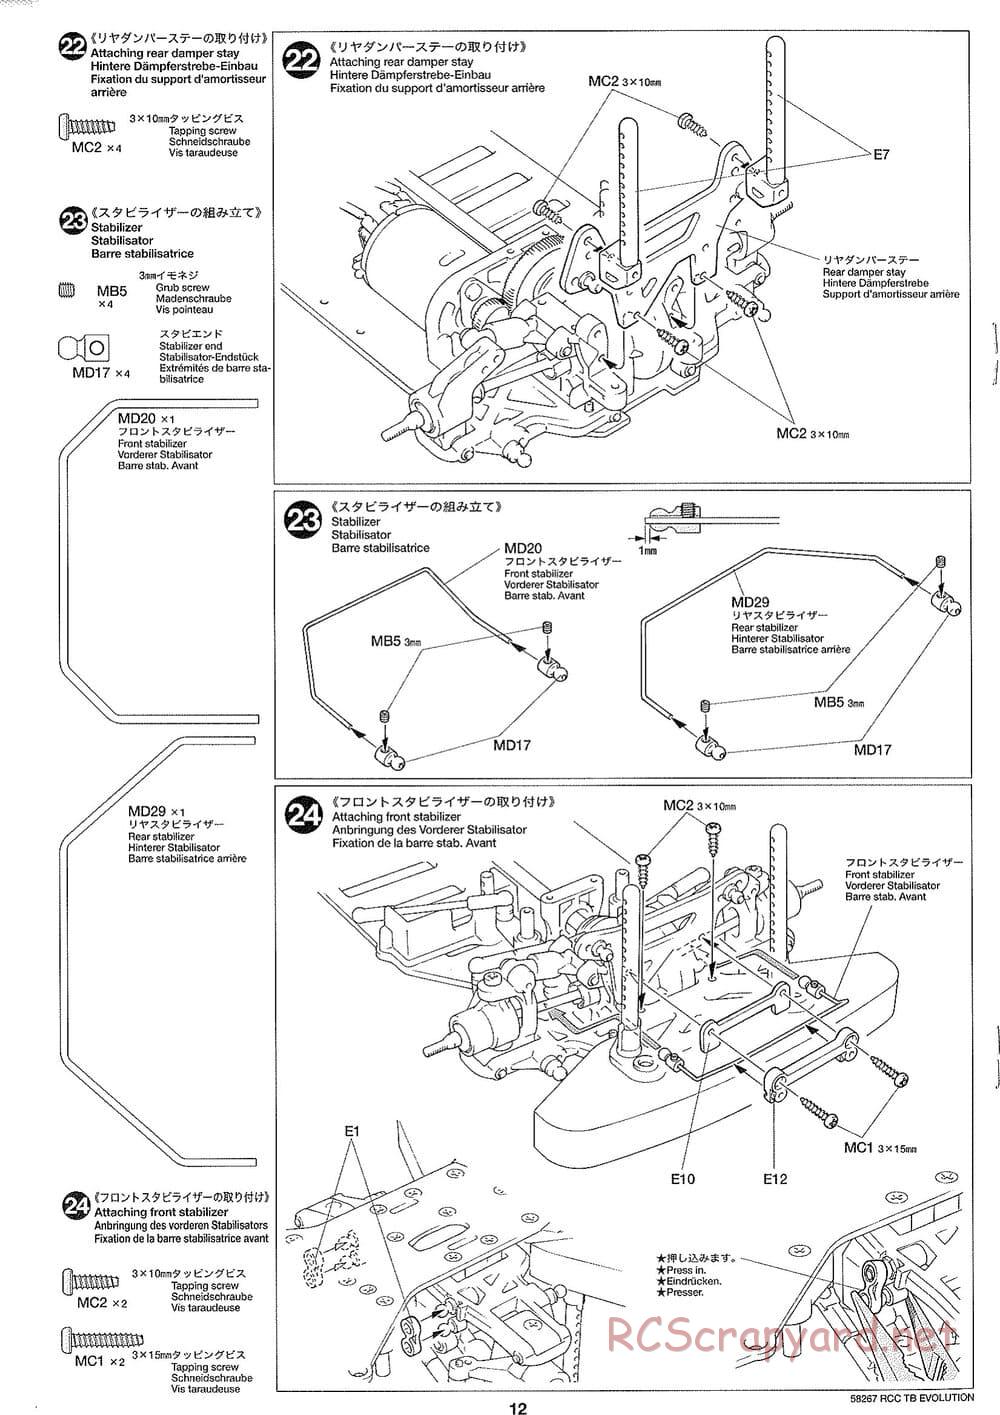 Tamiya - TB Evolution Chassis - Manual - Page 12